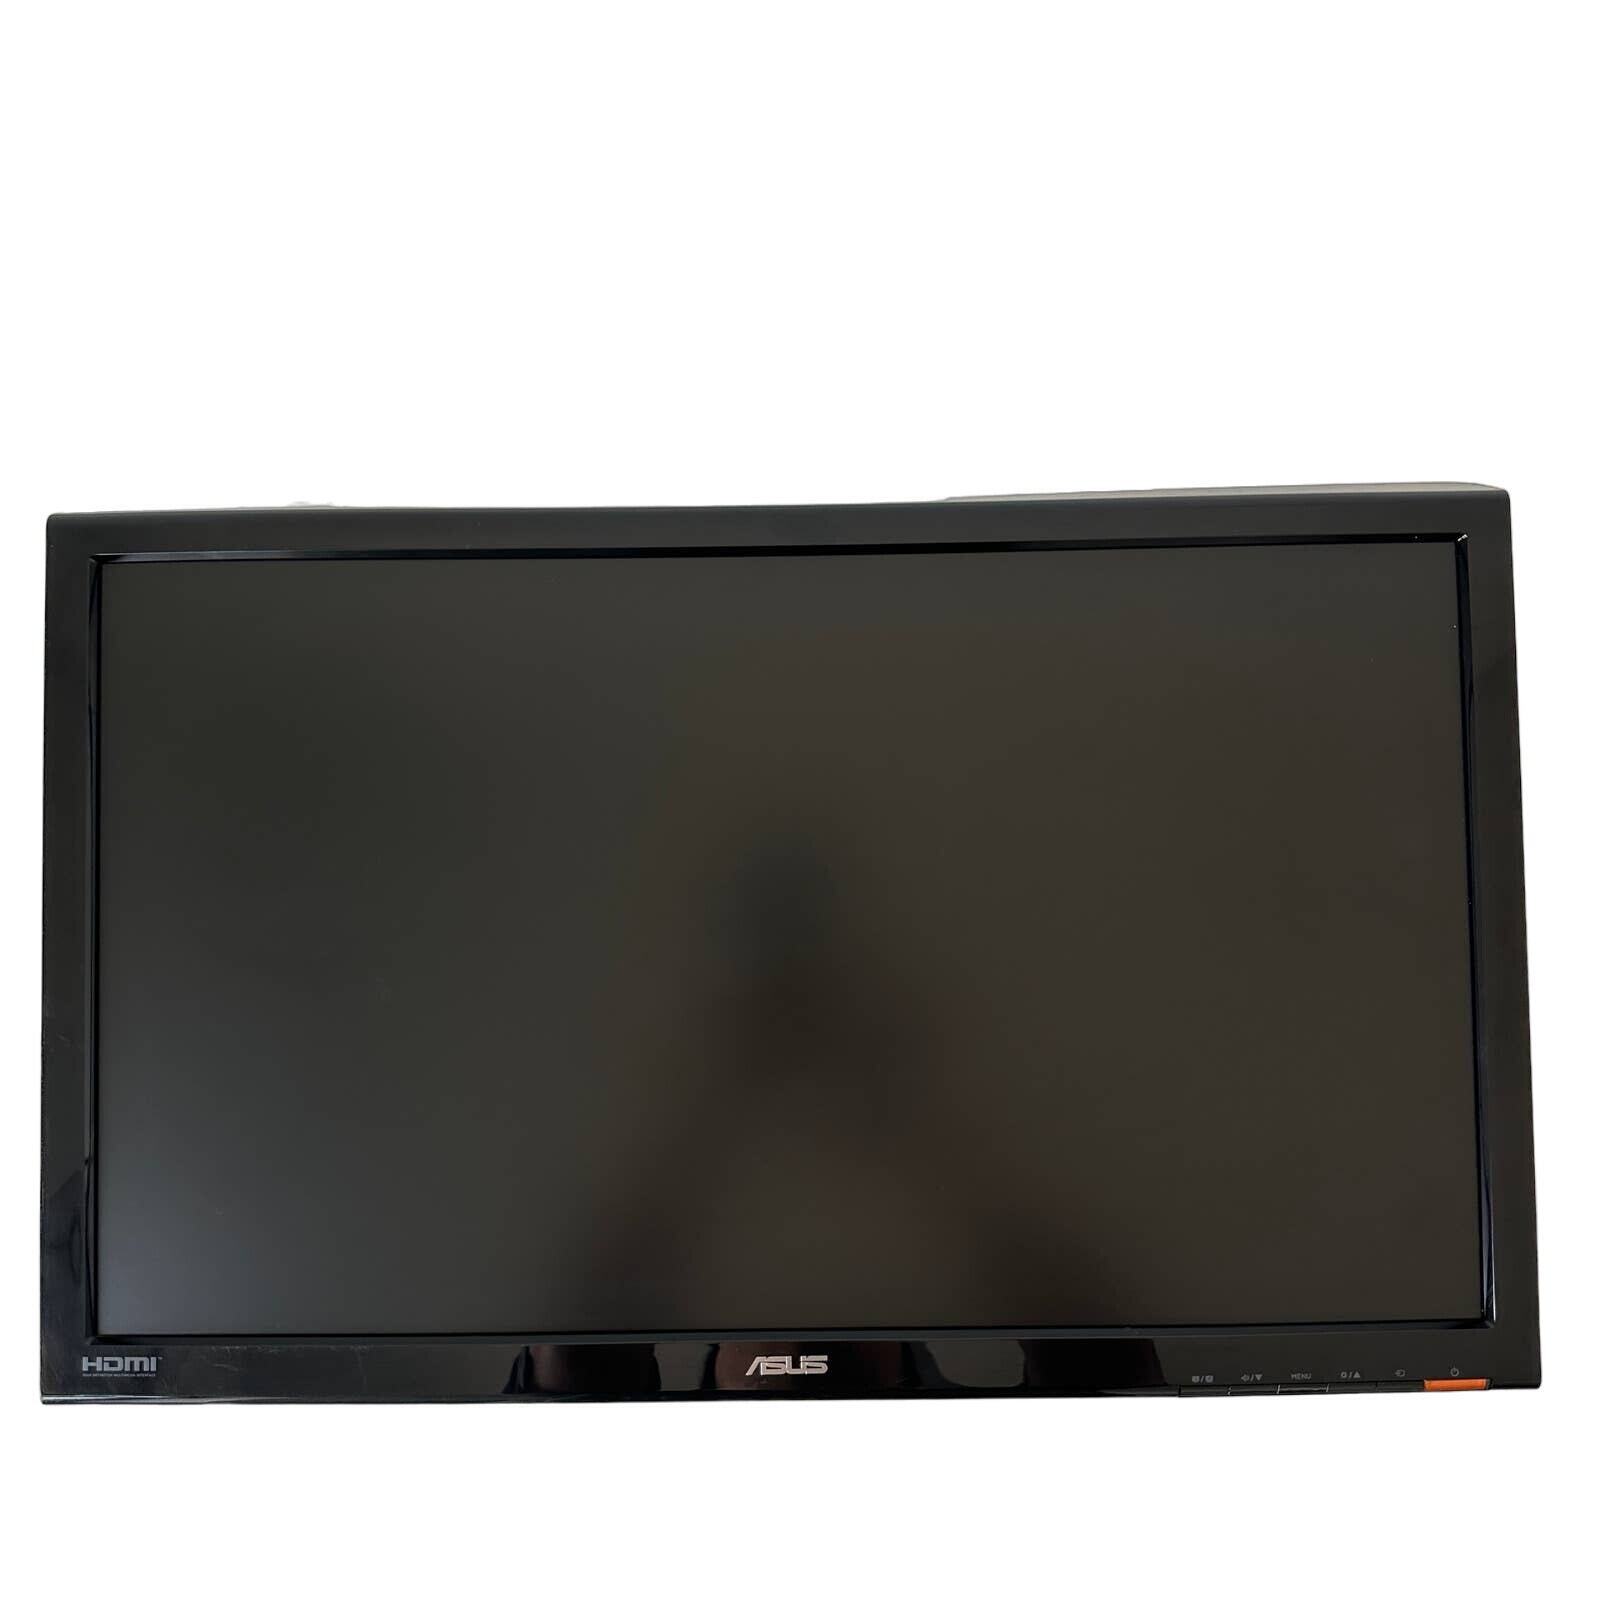 ASUS VH242H Full HD 1080p LCD Monitor HDMI 23.6